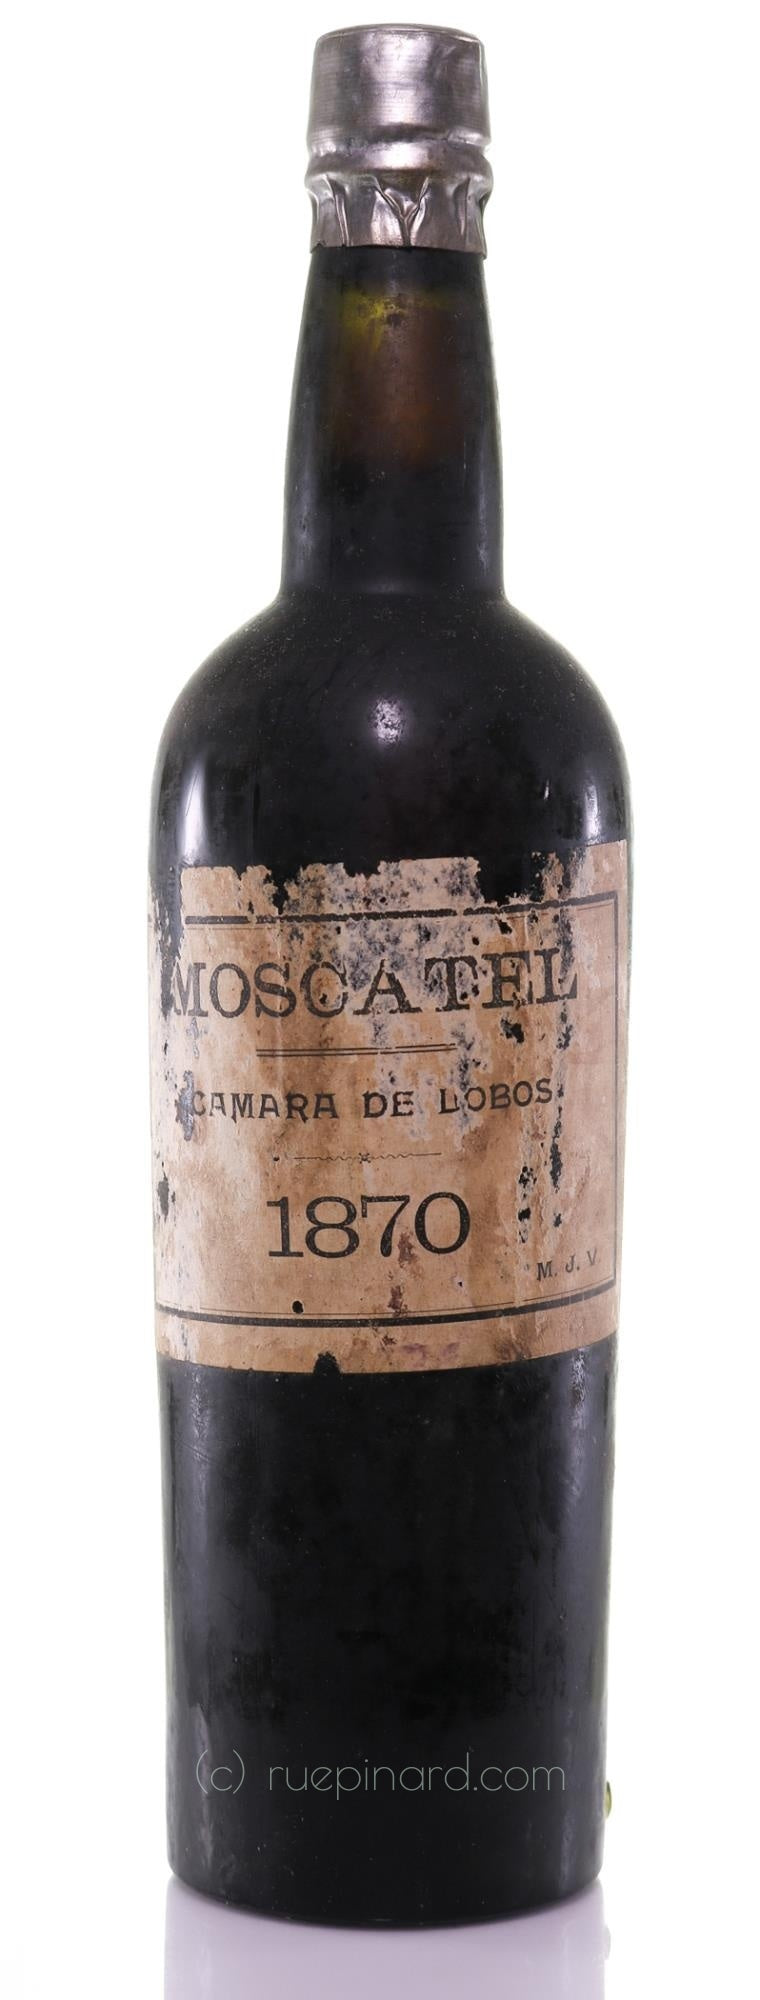 MJV Moscatel 1870, Madeira, Câmara de Lobos. - Rue Pinard